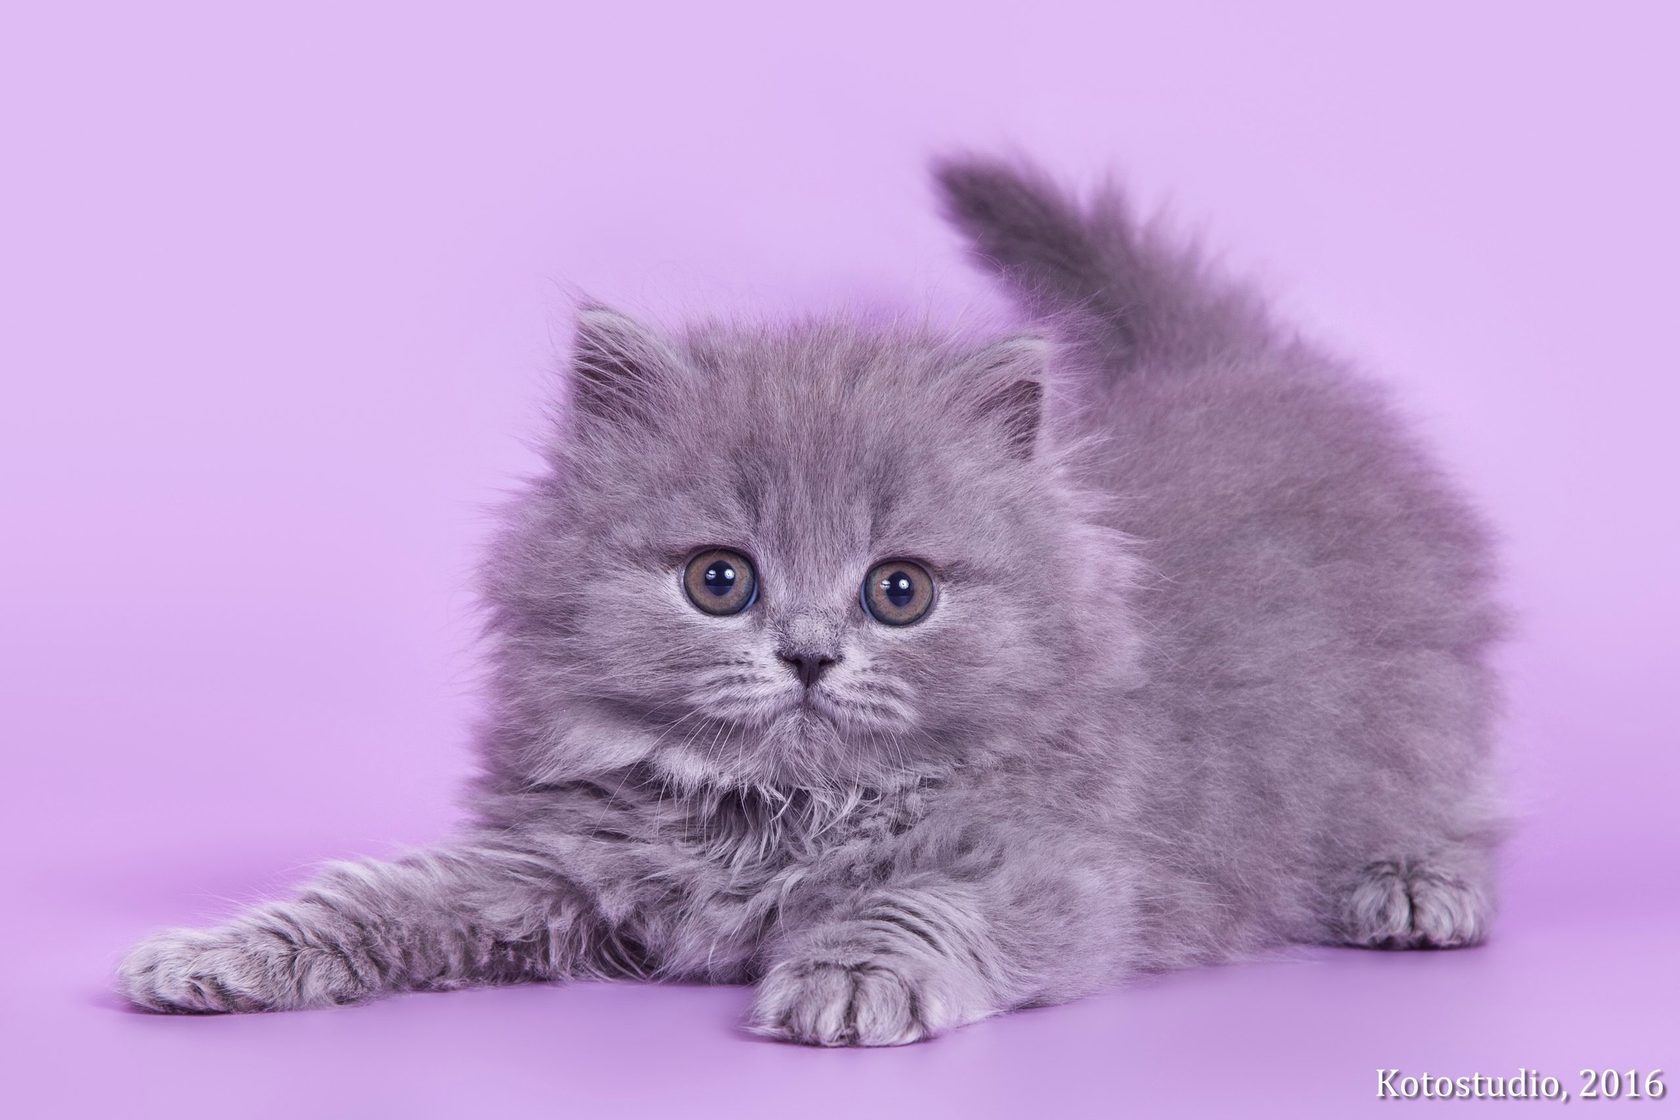 Купить котенка голубого окраса пушистые в СПБ. Купить котёнка британца в СПБ недорого в Санкт-Петербурге.